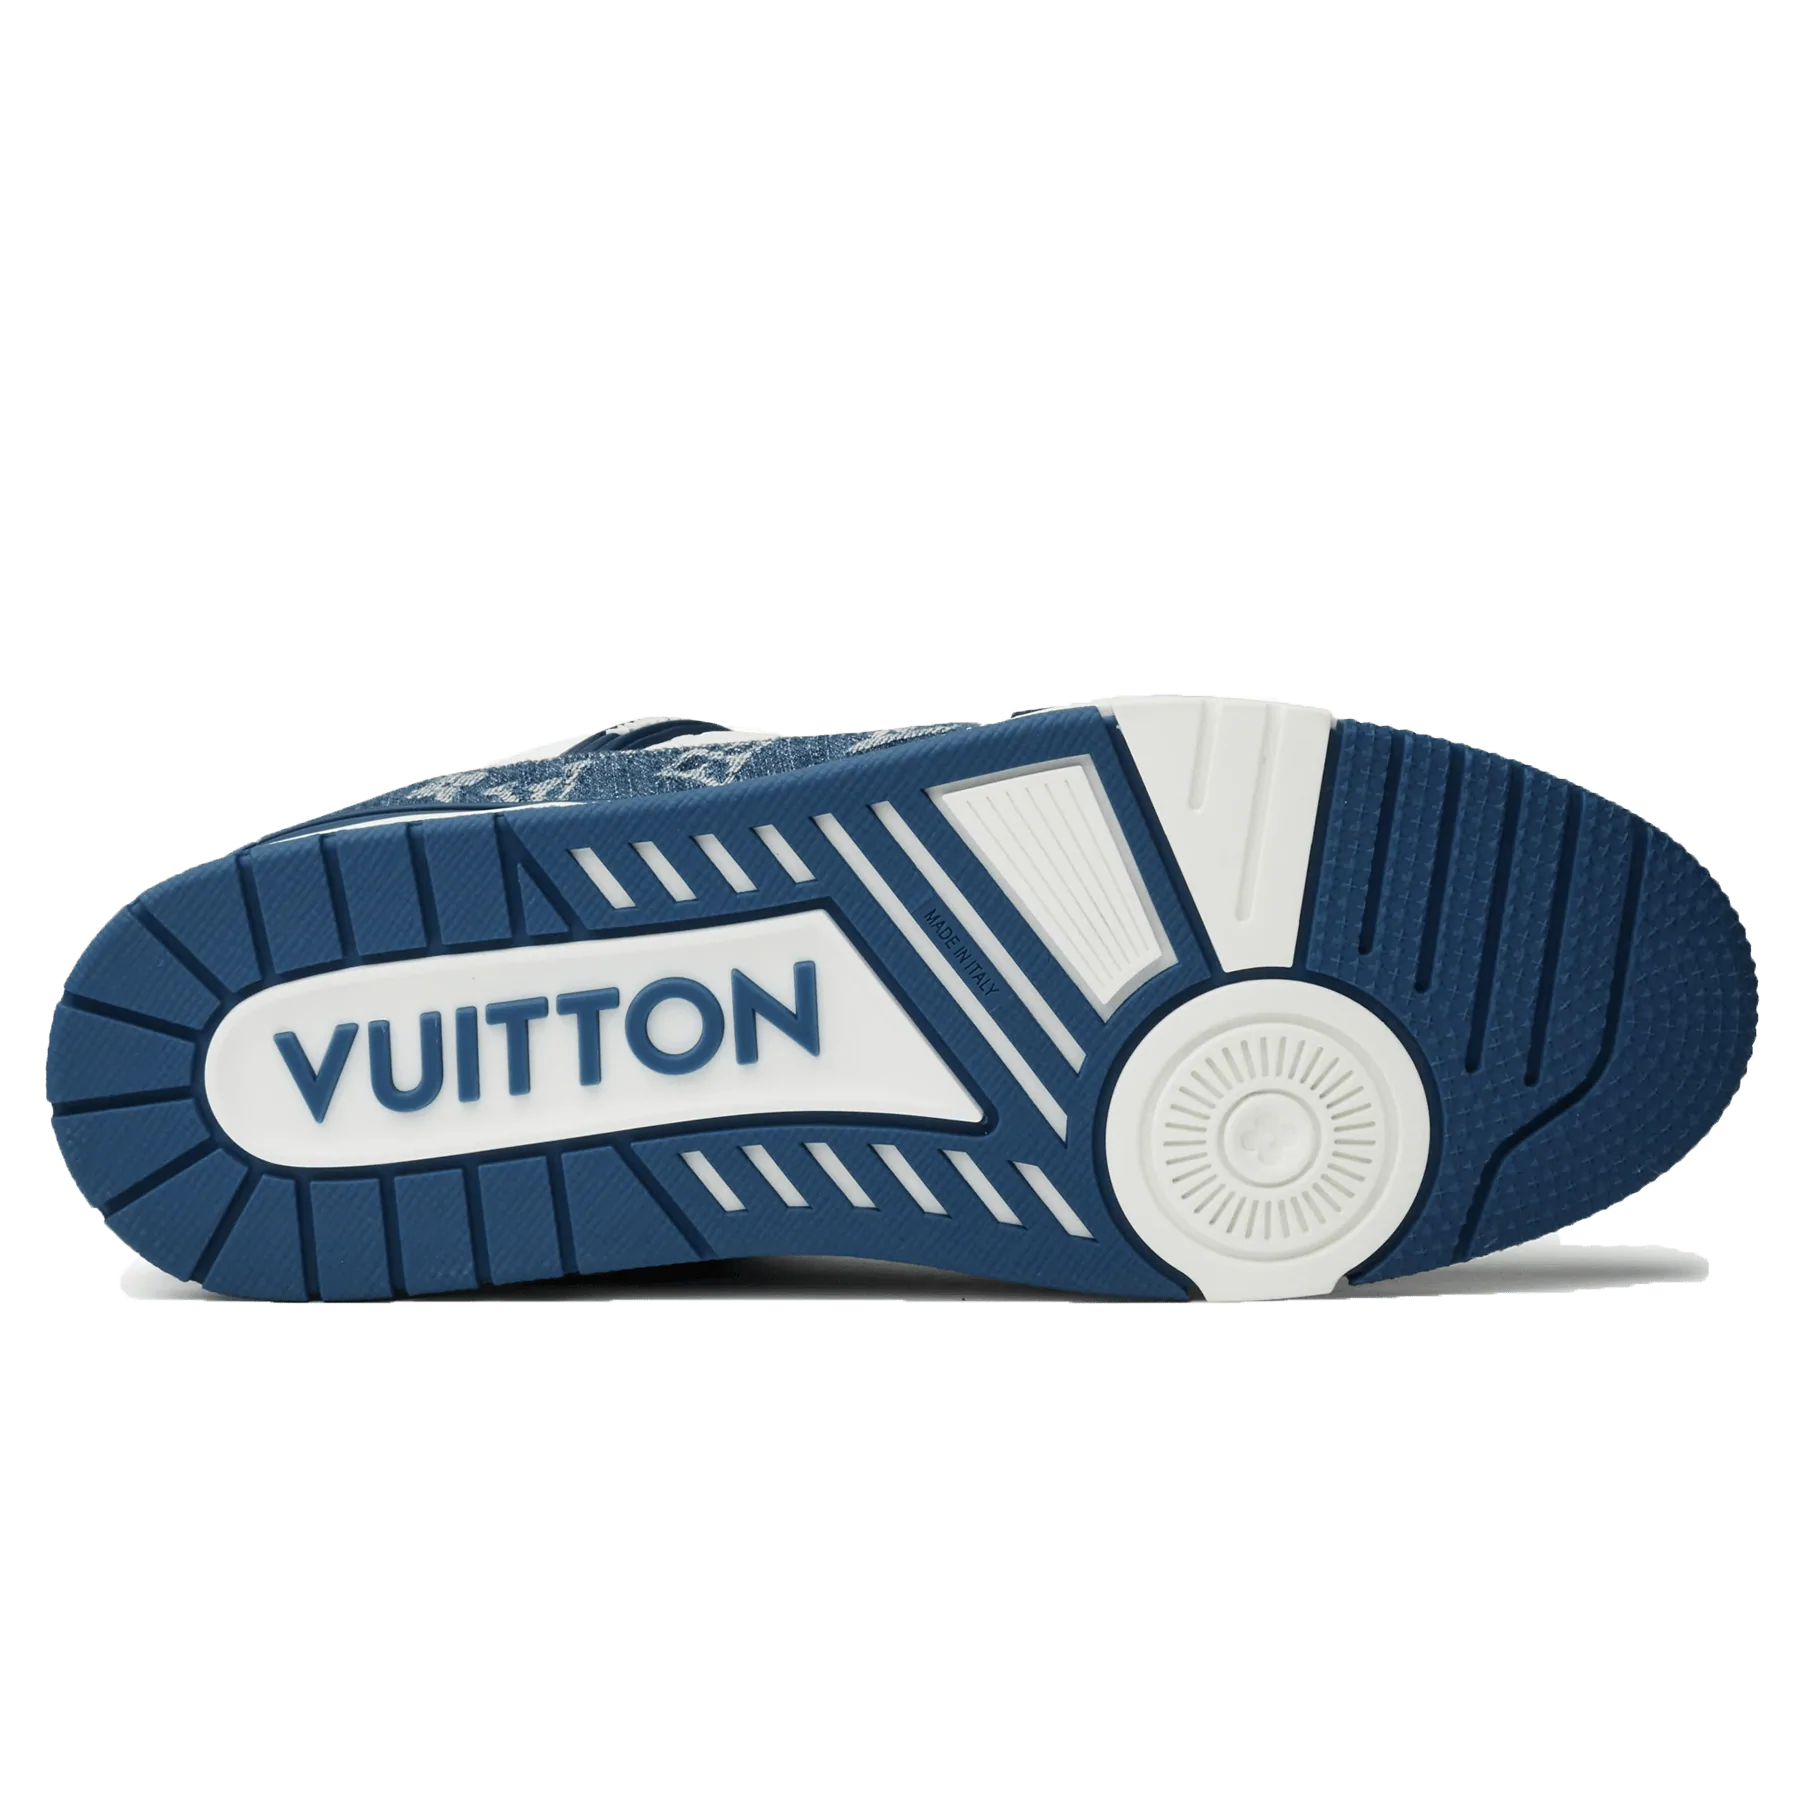 WMNS) LOUIS VUITTON LV Boombox Monogram Sneakers Denim-Blue 1A8E3S